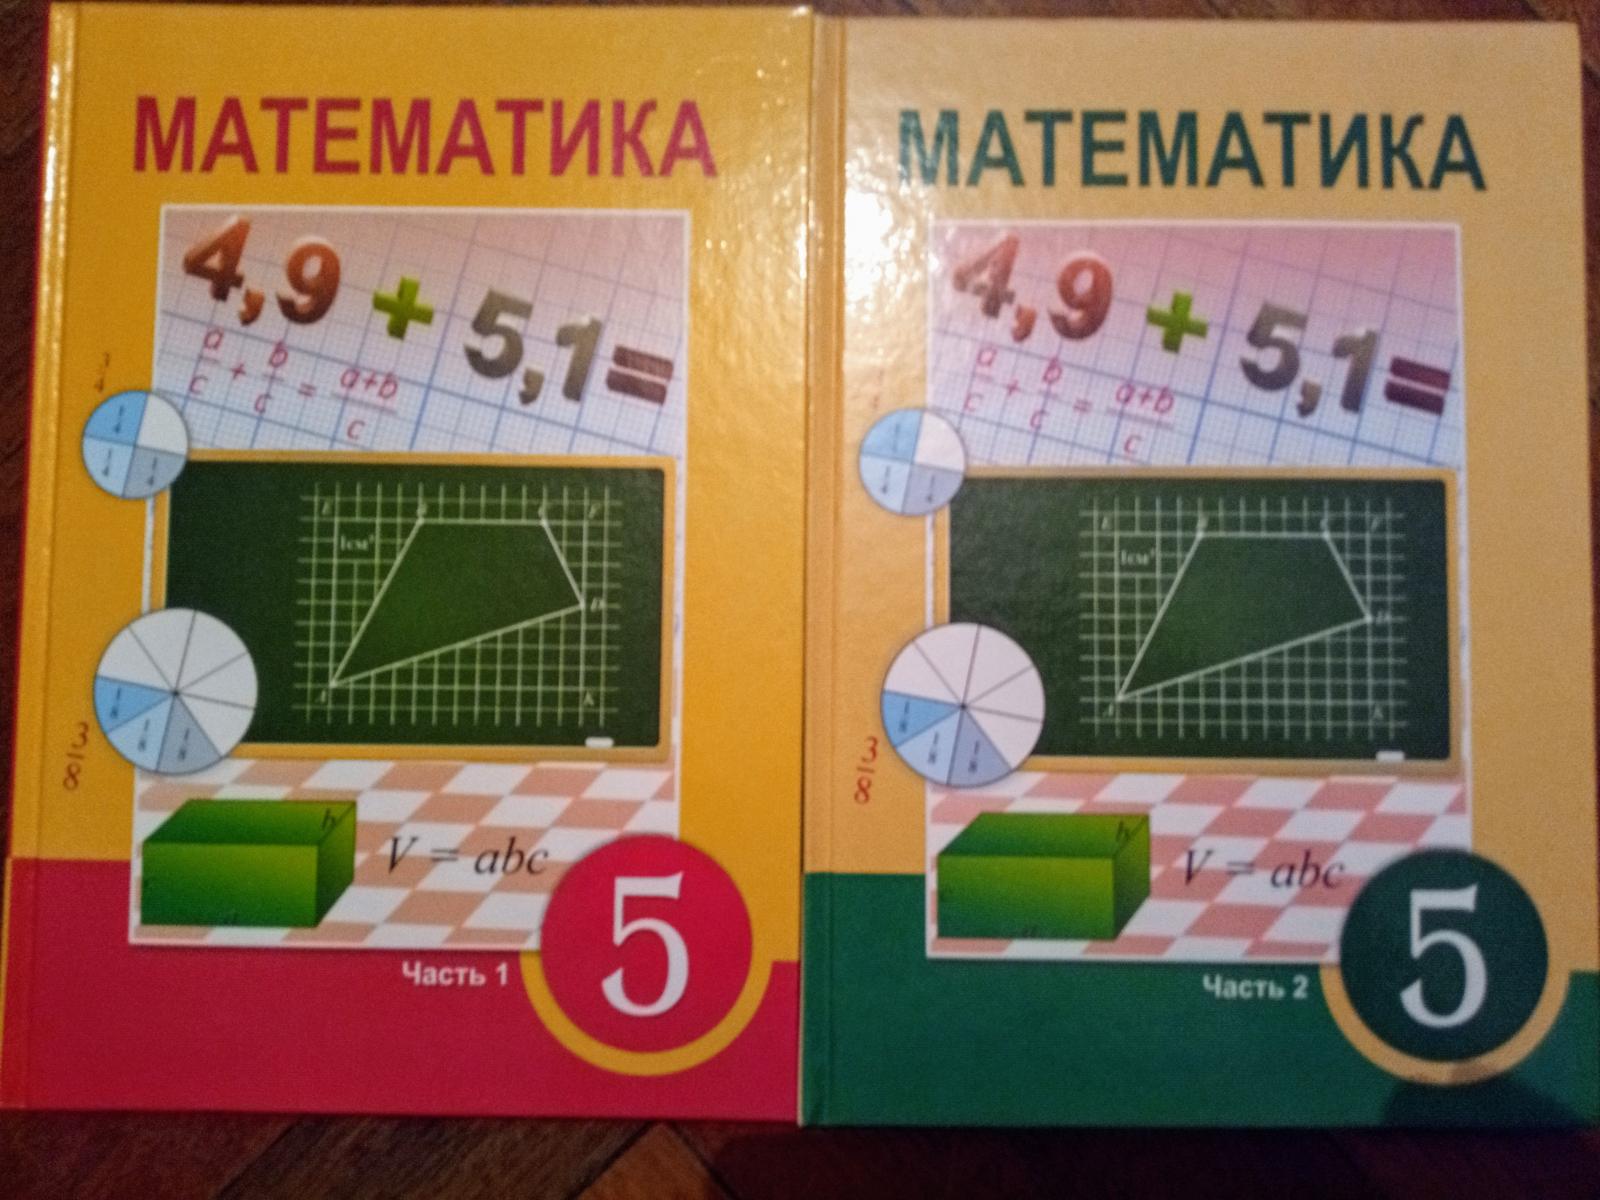 Матем 5 5.358. 2+Учебники+атамура. Матем 5 кл 2 часть 5.511. Математика 6 класс атамура 2006 год. Матем 5.510.